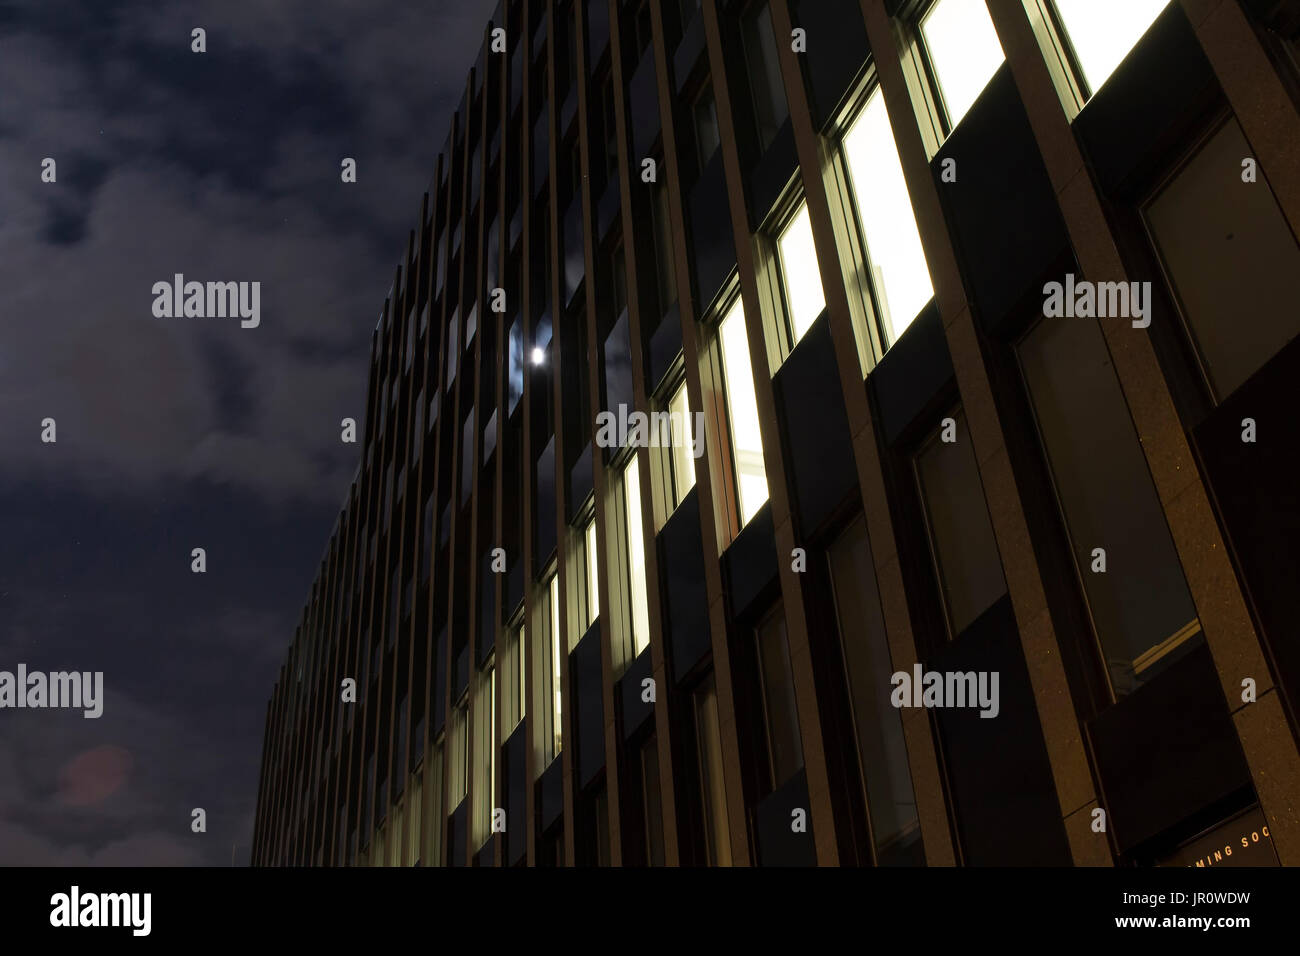 Nachtansicht der Fassade eines modernen Gebäudes in Frankfurt am Main. Wolken und Vollmond spiegeln sich auf Gläser. Stockfoto